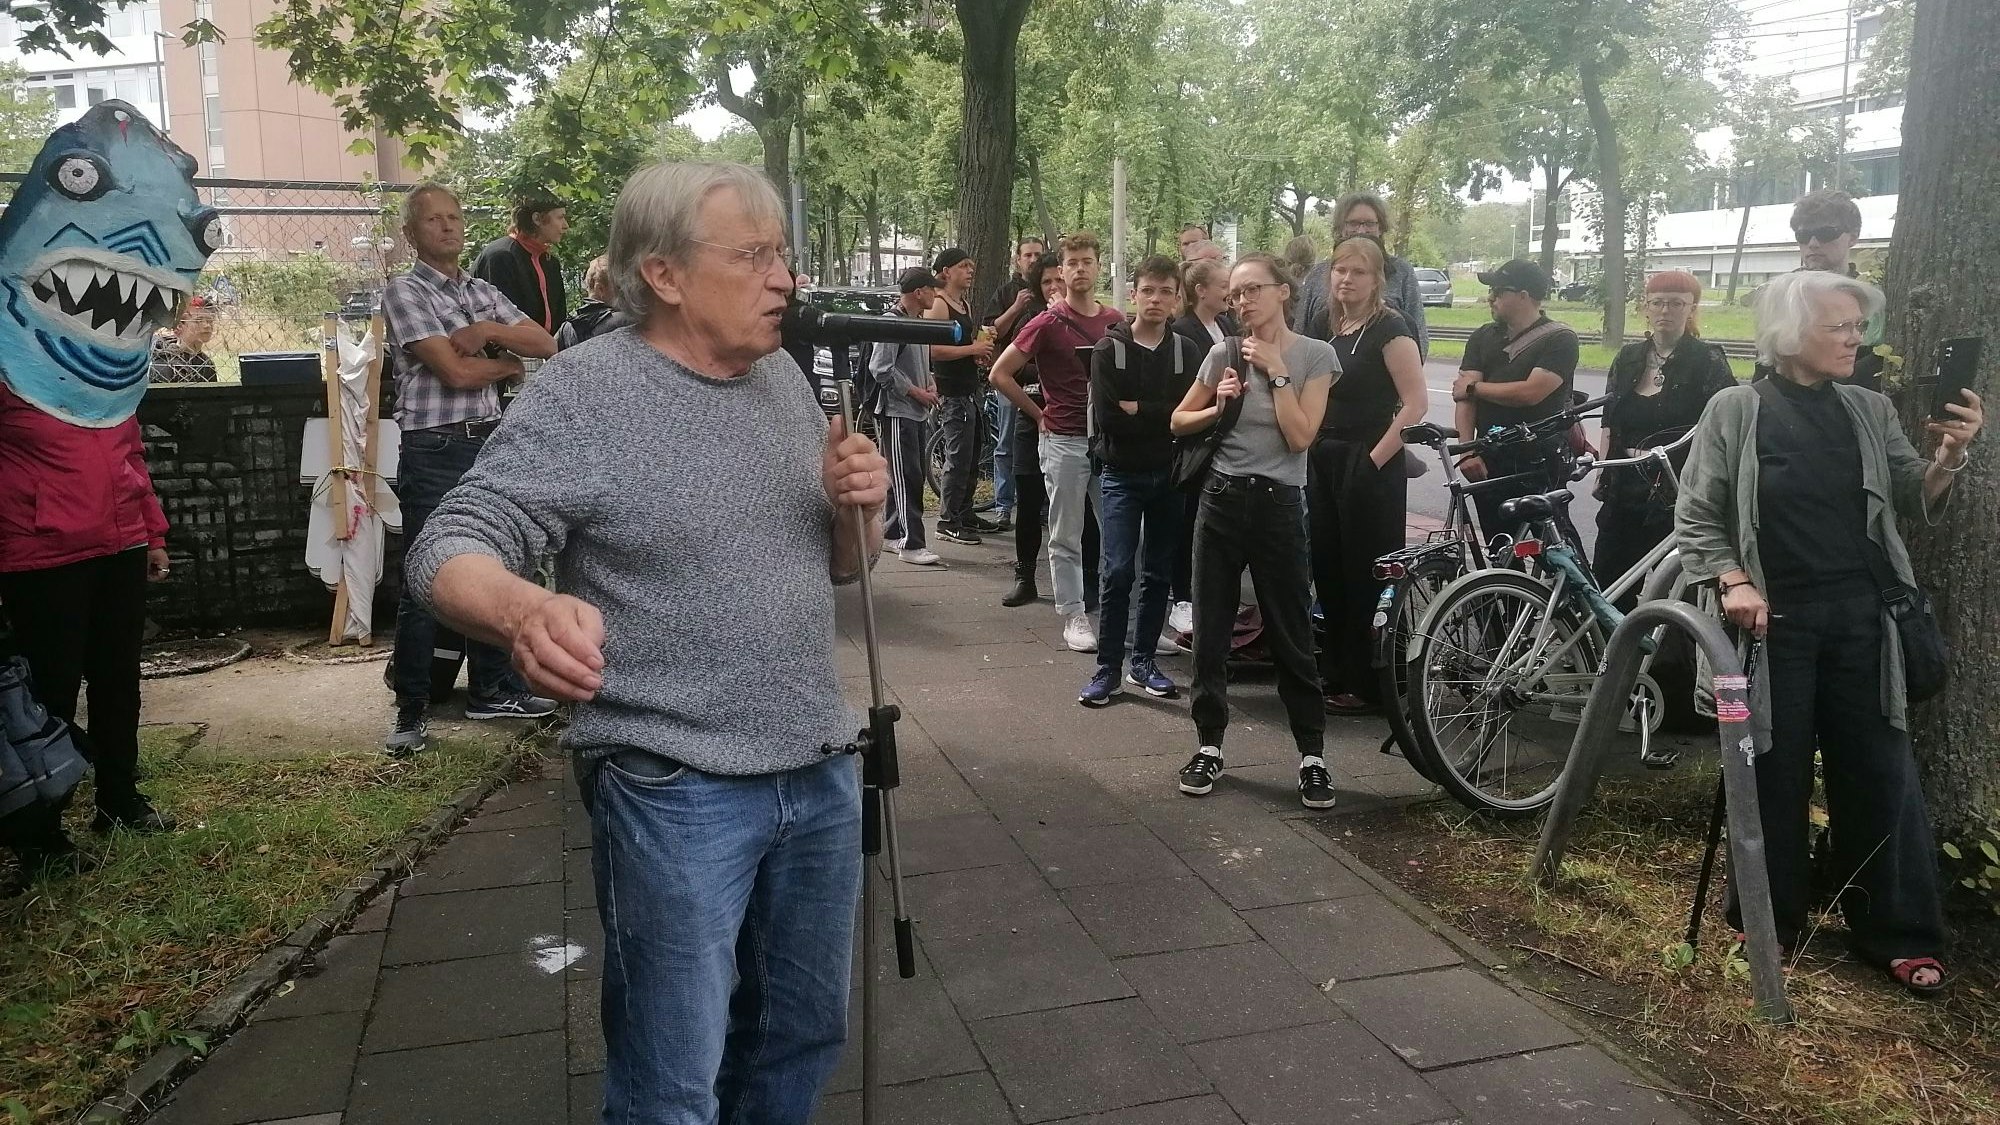 Mann, der vor Menschenmenge auf der Straße in ein Mikrofon spricht